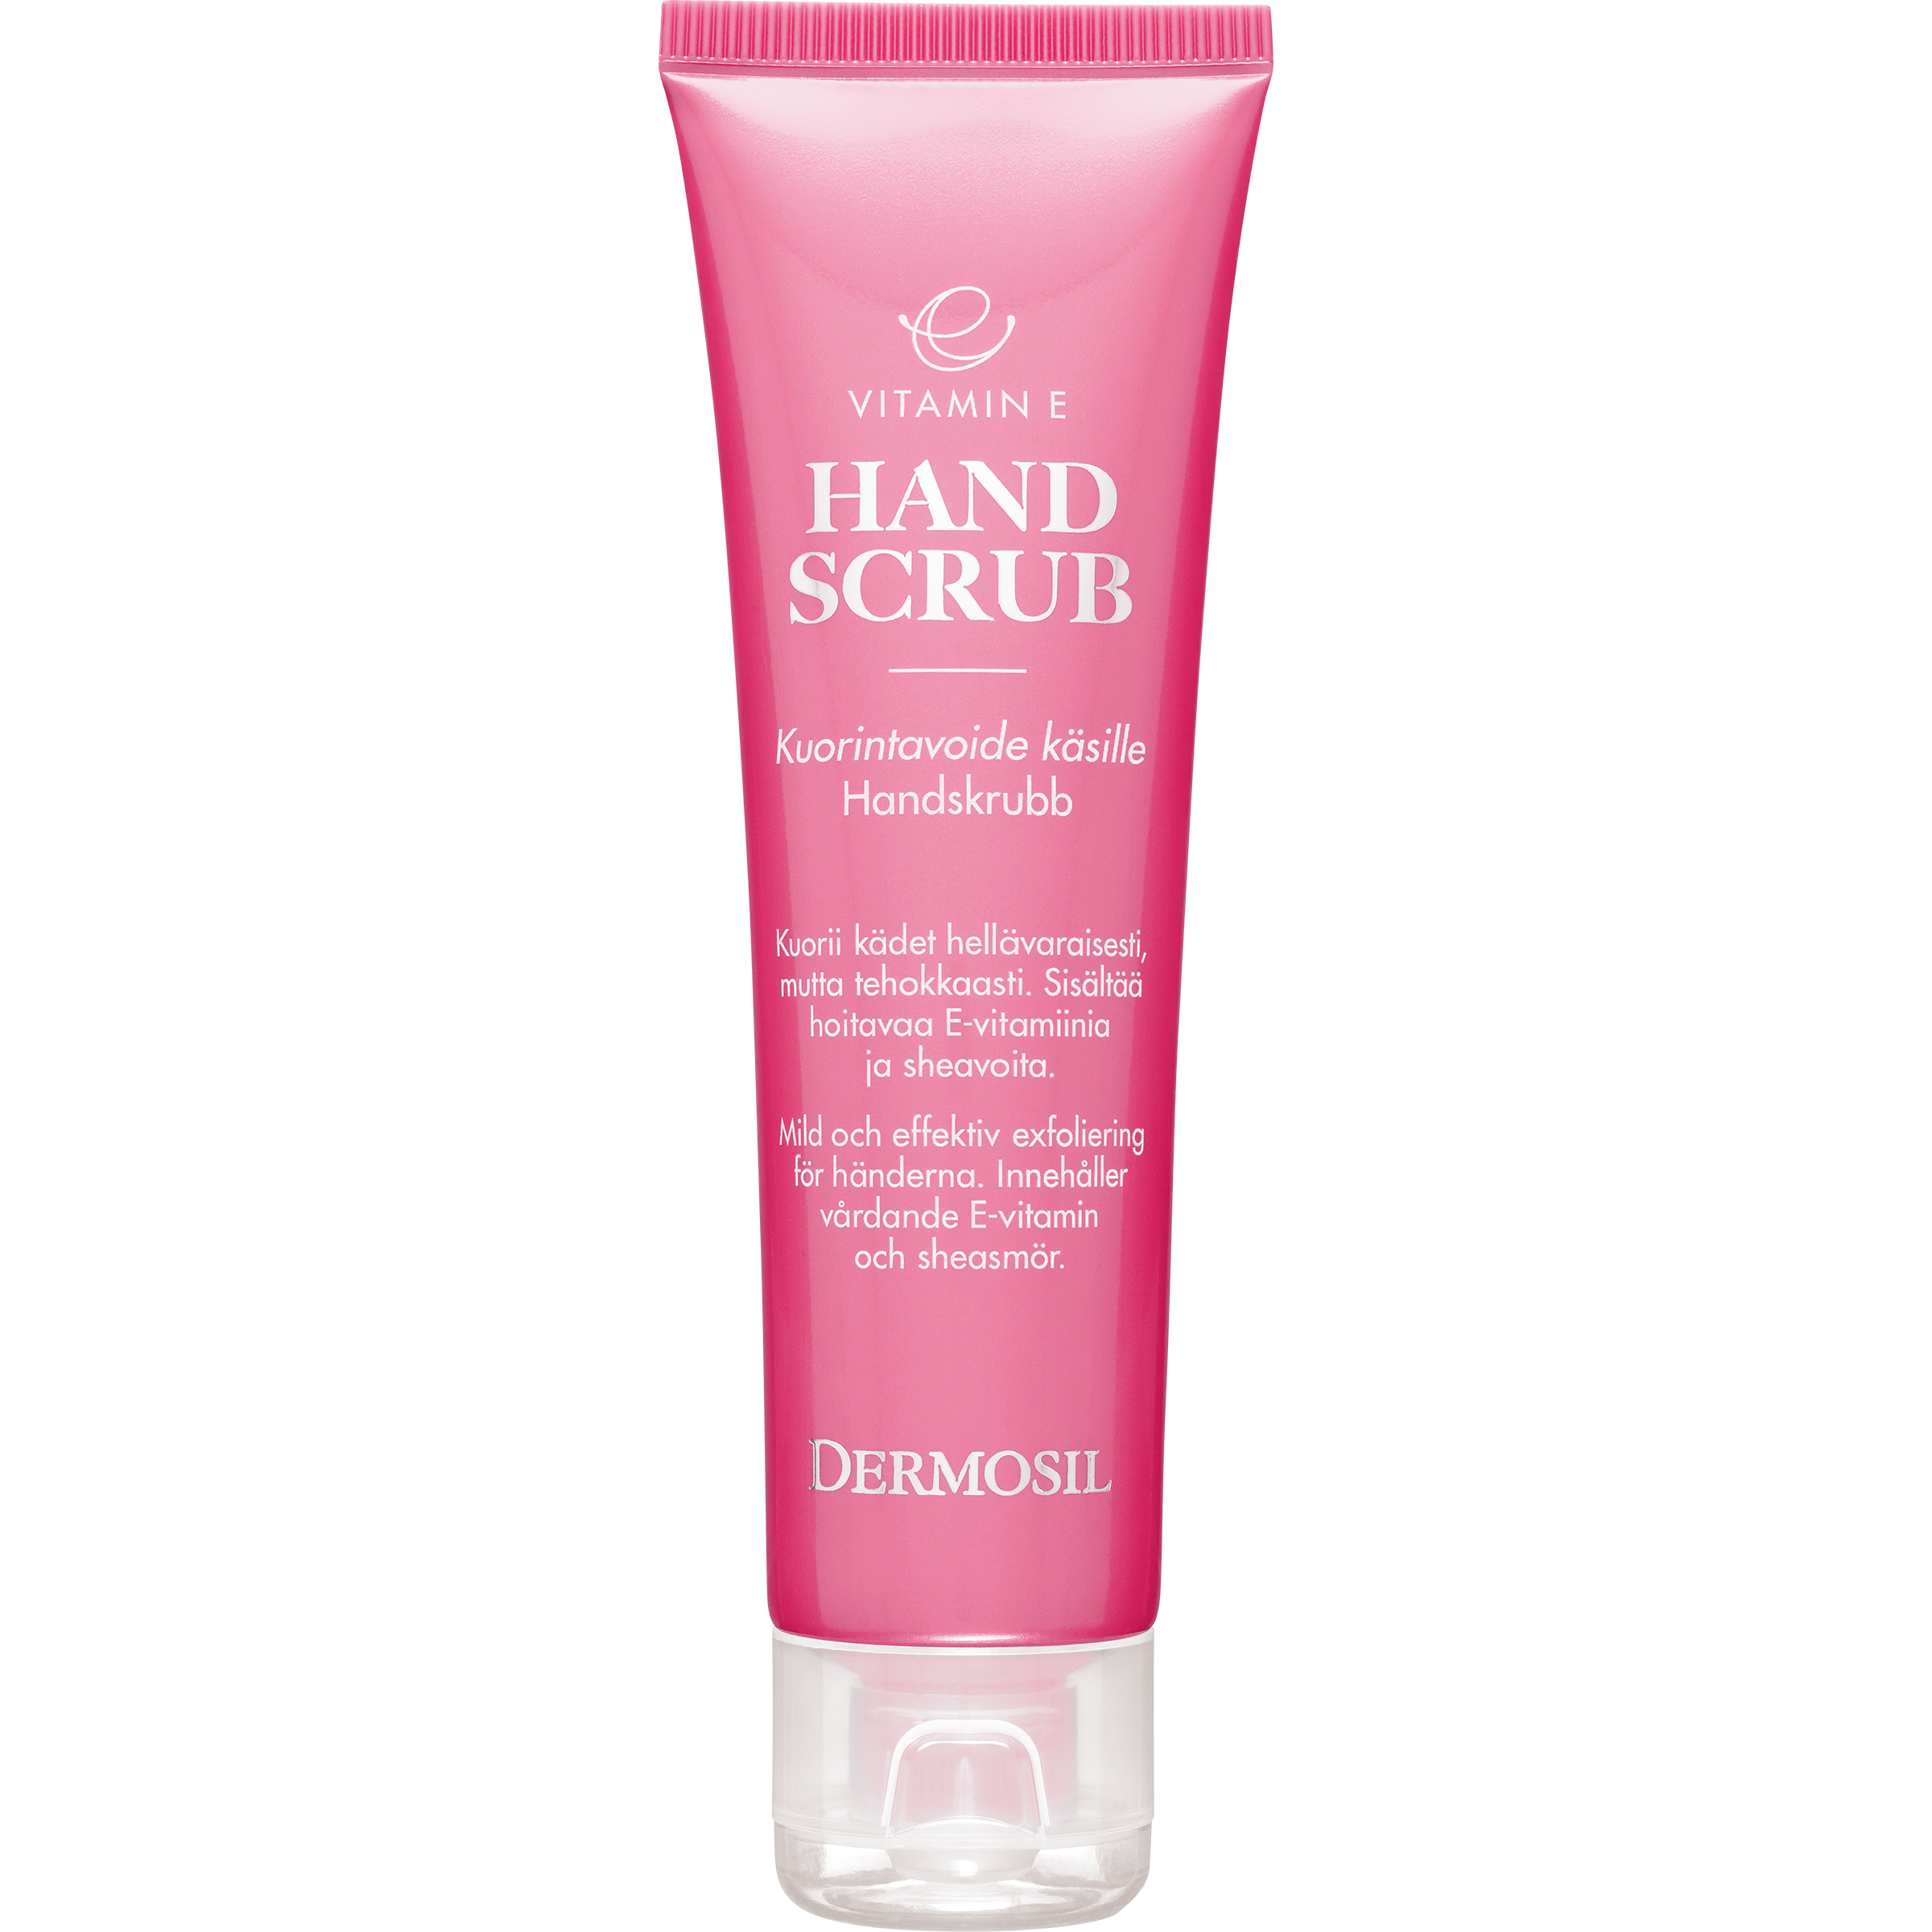 Effective but mild hand scrub - Dermosil